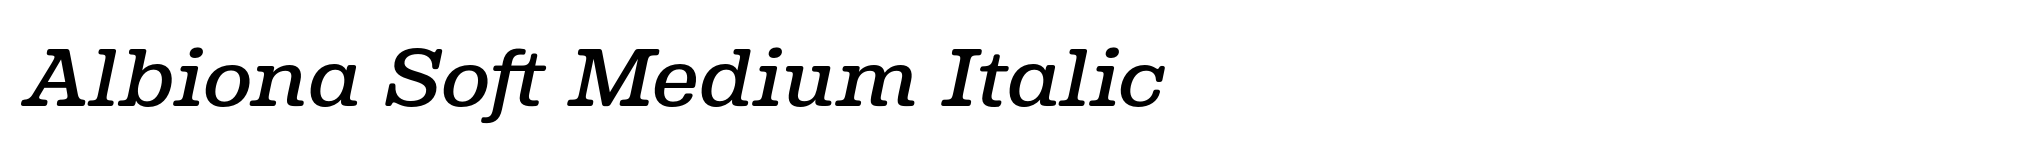 Albiona Soft Medium Italic image